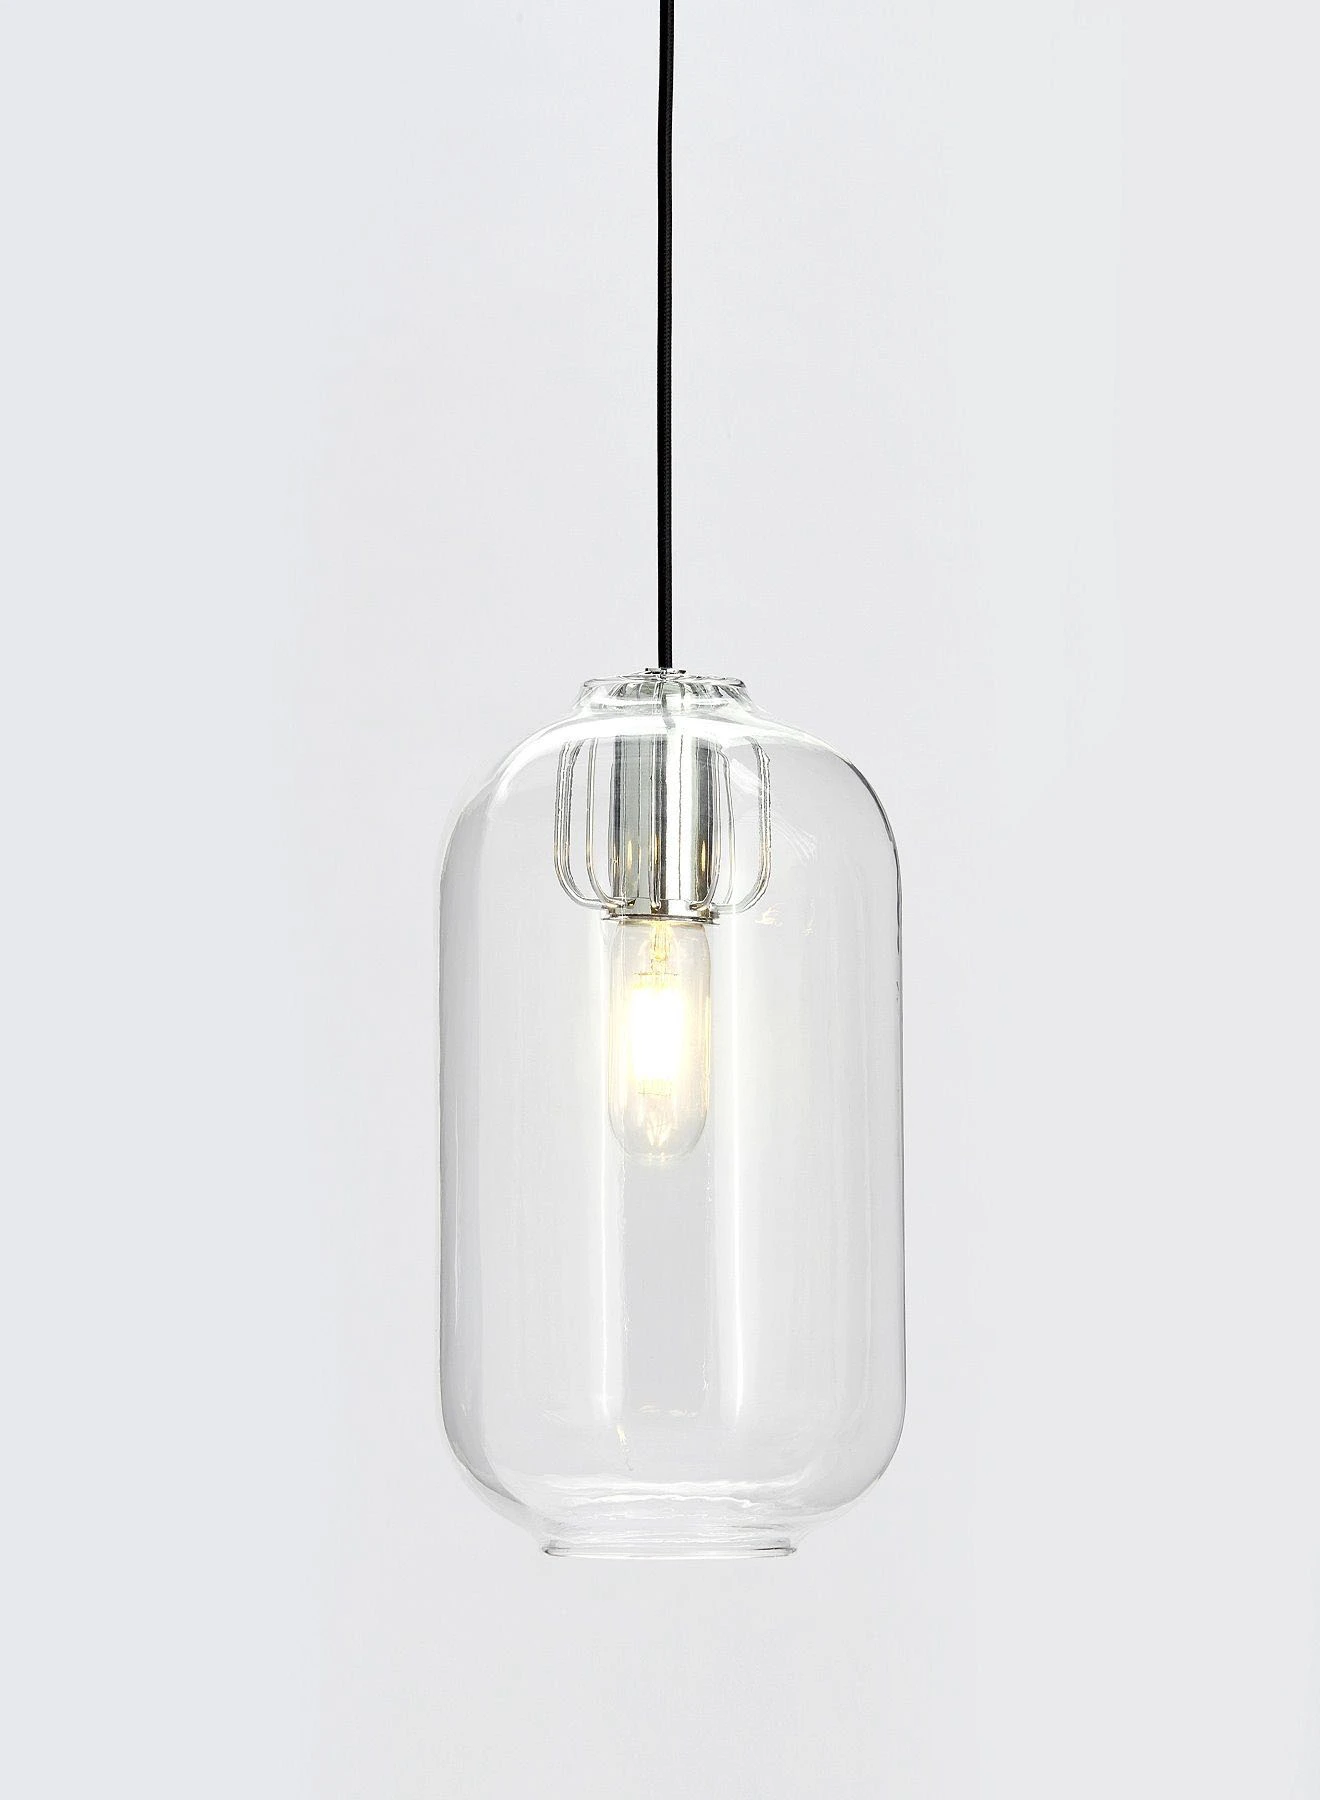 التبديل مصباح قلادة الزخرفية مواد فاخرة فريدة من نوعها لمنزل أنيق مثالي PL020510 شفاف 19.4 سم